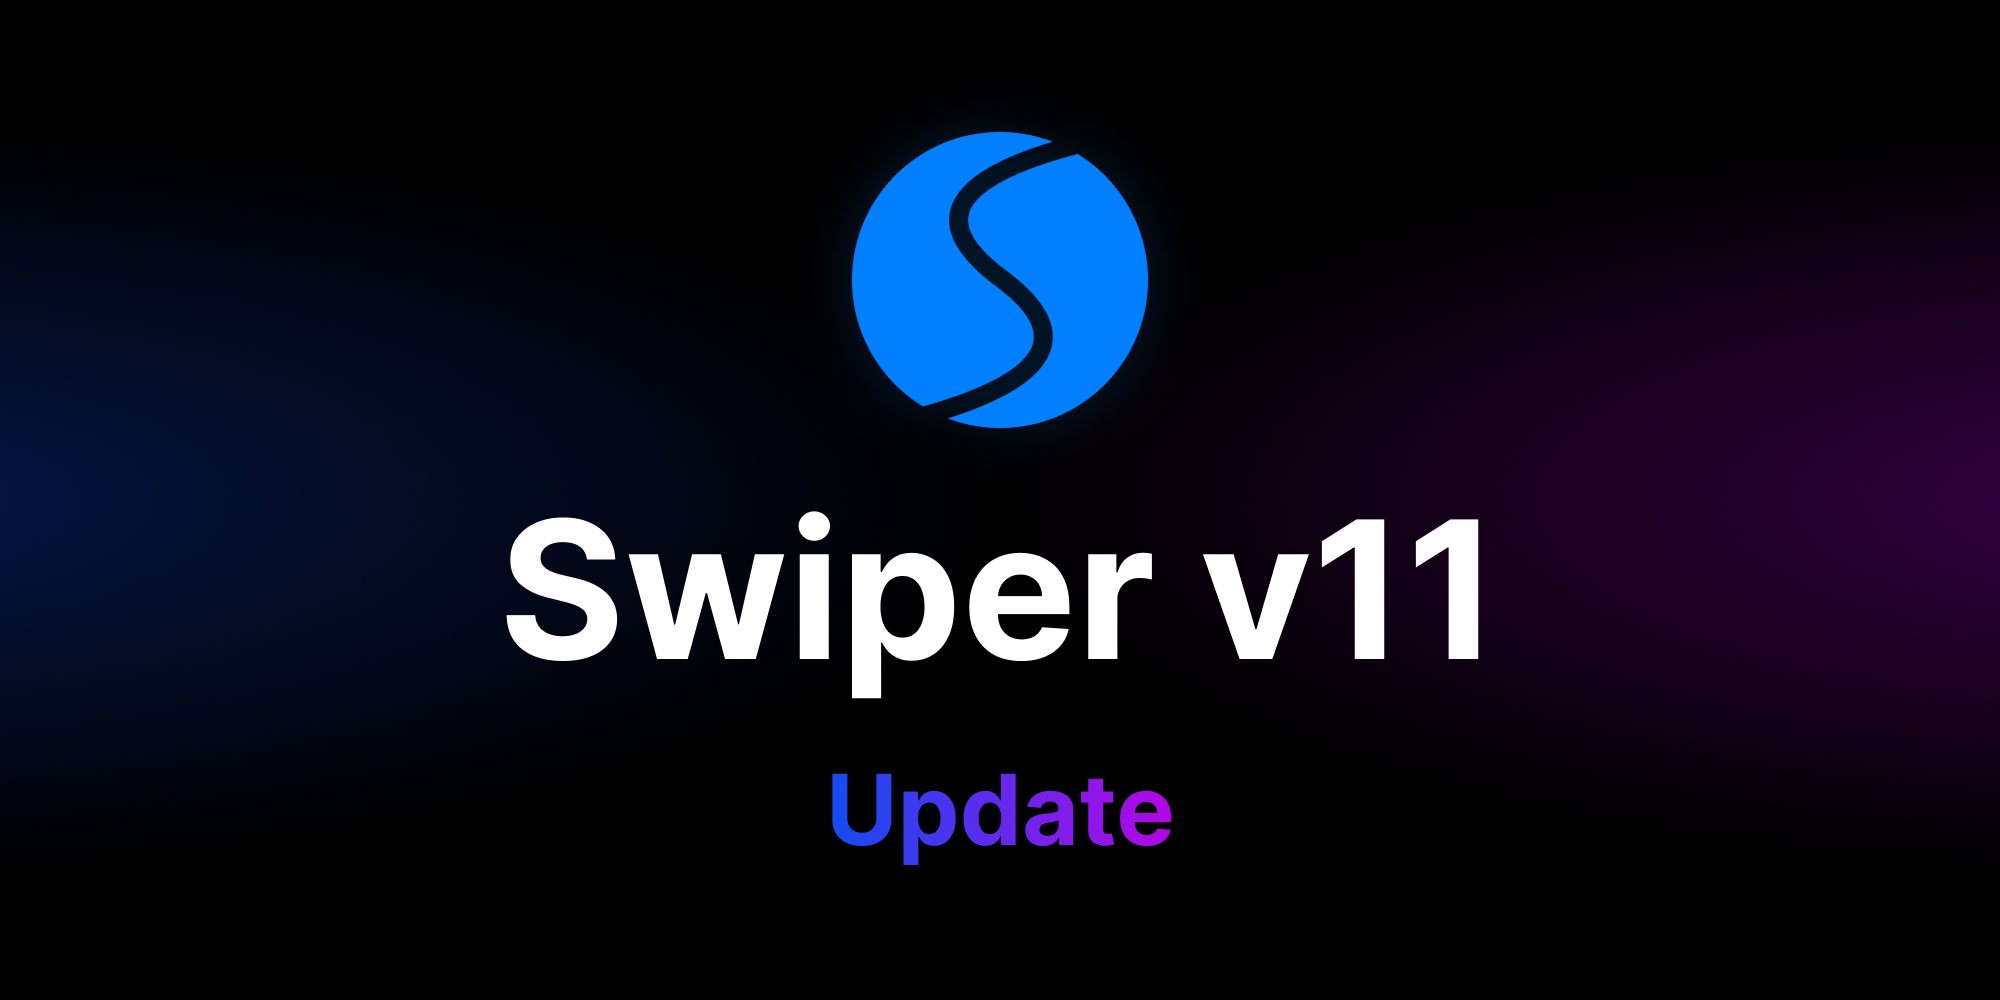 Update To Swiper v11